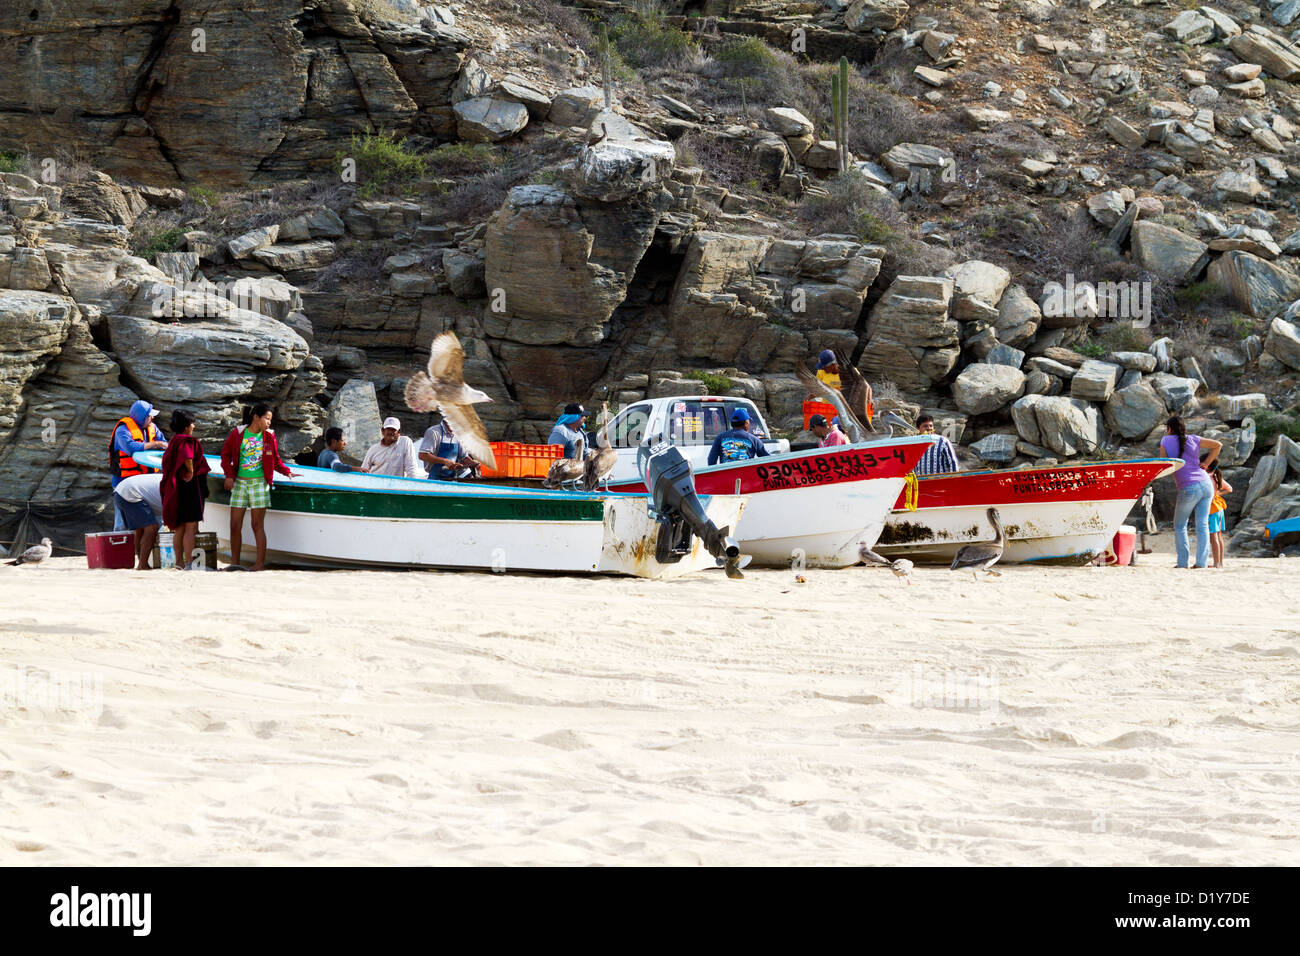 Fishermen and their families gather on a beach near Todos Santos, Baja, Mexico Stock Photo